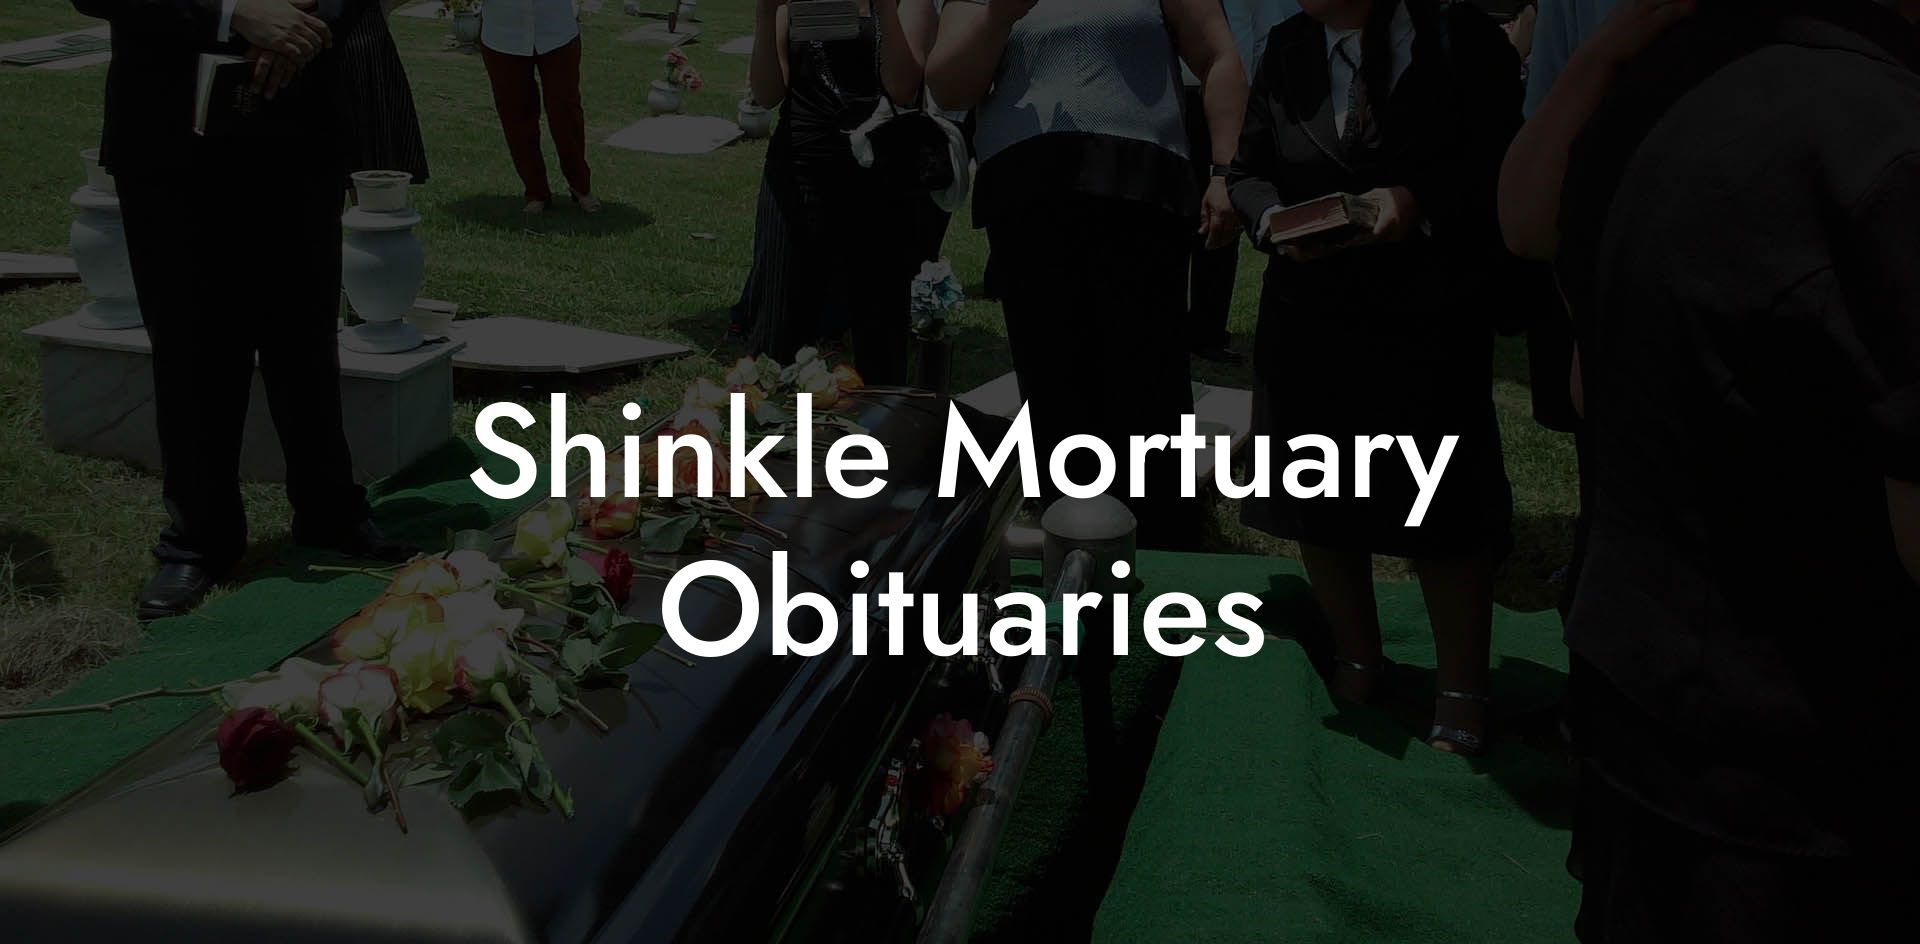 Shinkle Mortuary Obituaries